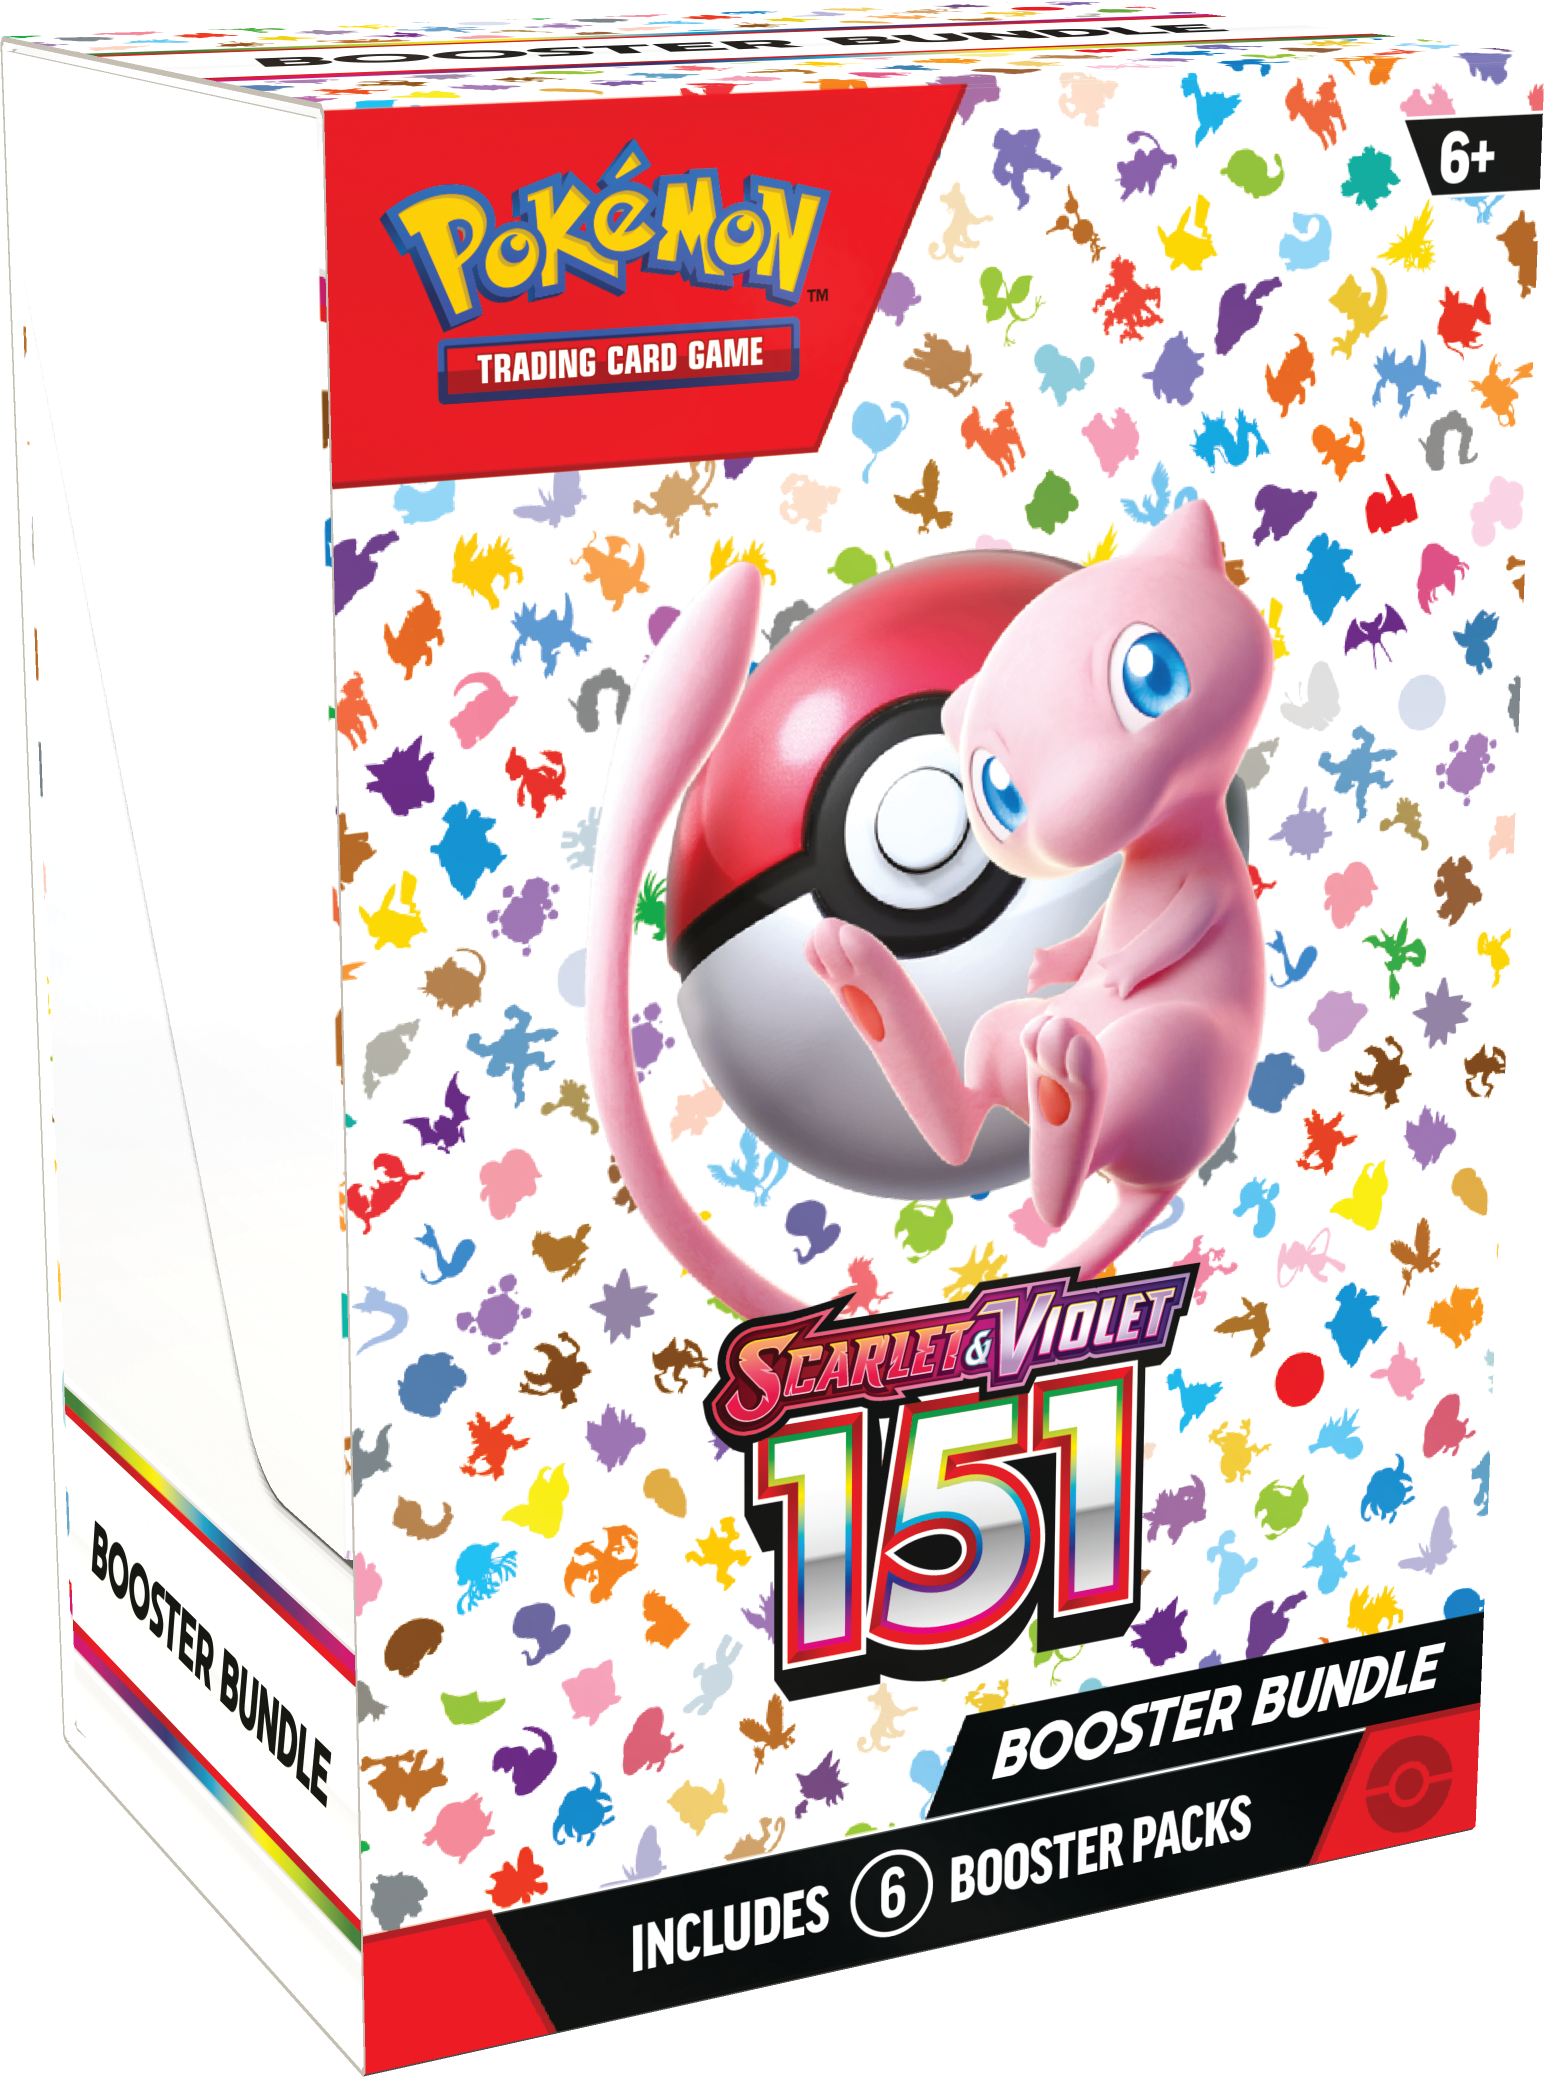 Pokemon Scarlet & Violet 151: Booster Bundle | HFX Games